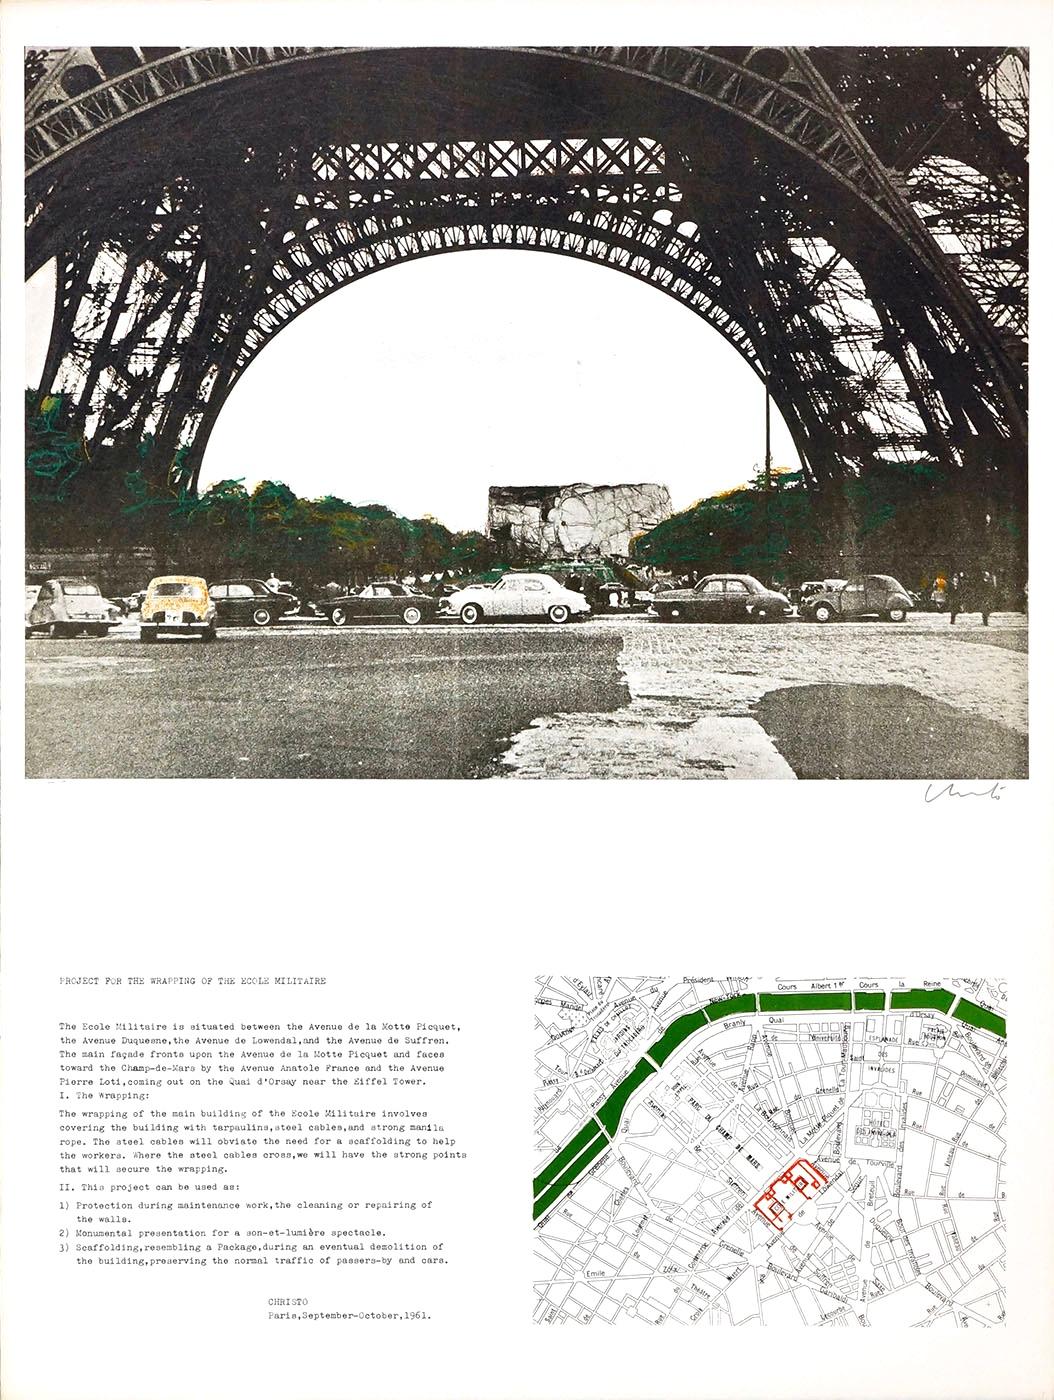 Project Ecole Militaire, Paris - Print by Javacheff Christo